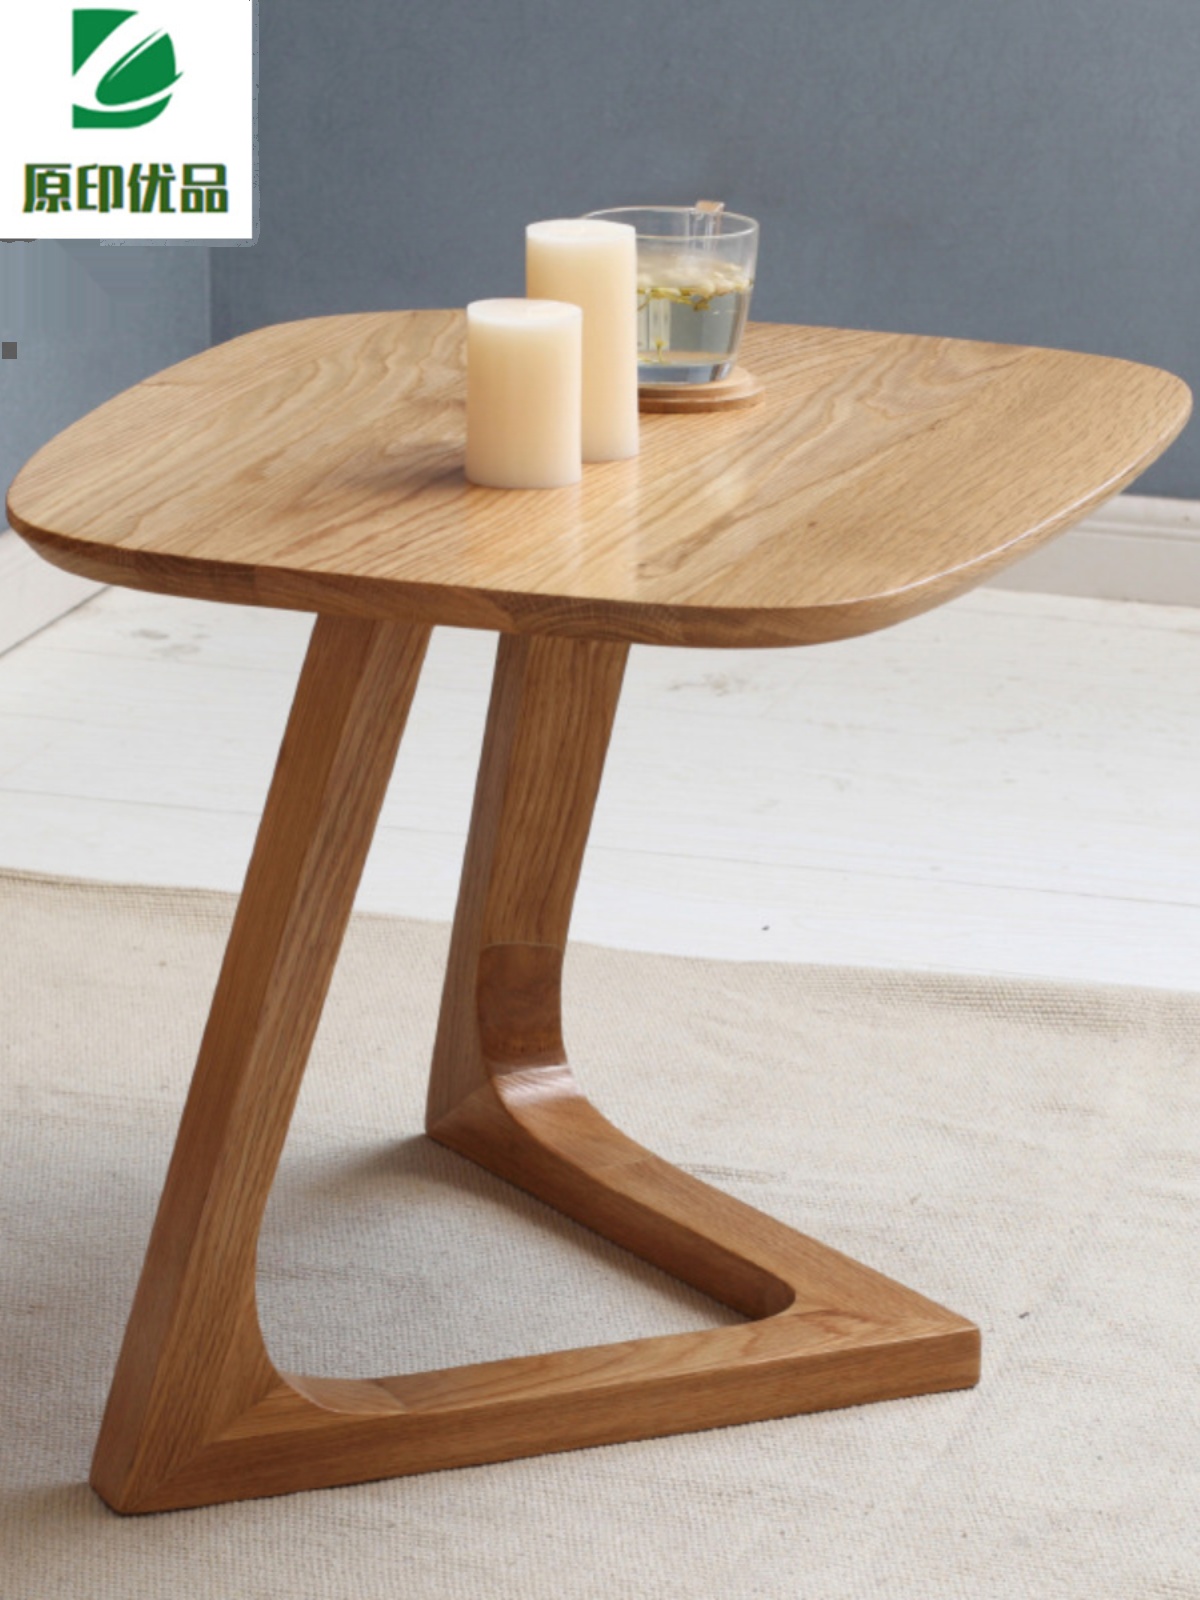 北歐風格橡木移動床邊桌 簡約時尚小茶几 原木色可定製